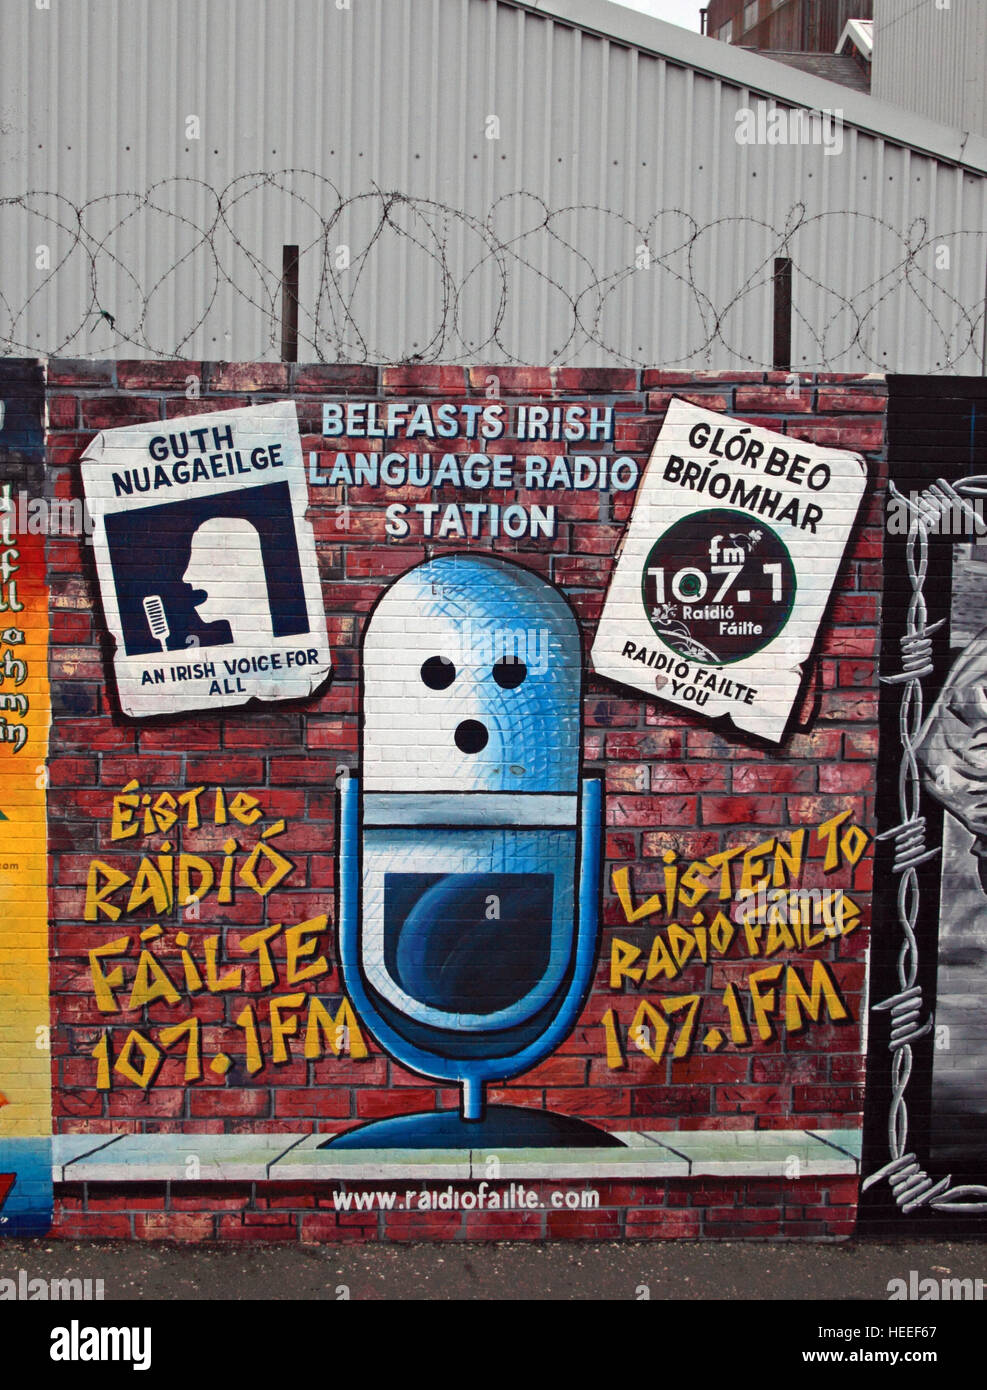 Belfast cade Rd murale repubblicana - radio Guth Nuagaeil,voce irlandese per tutte le Radio Failte Foto Stock